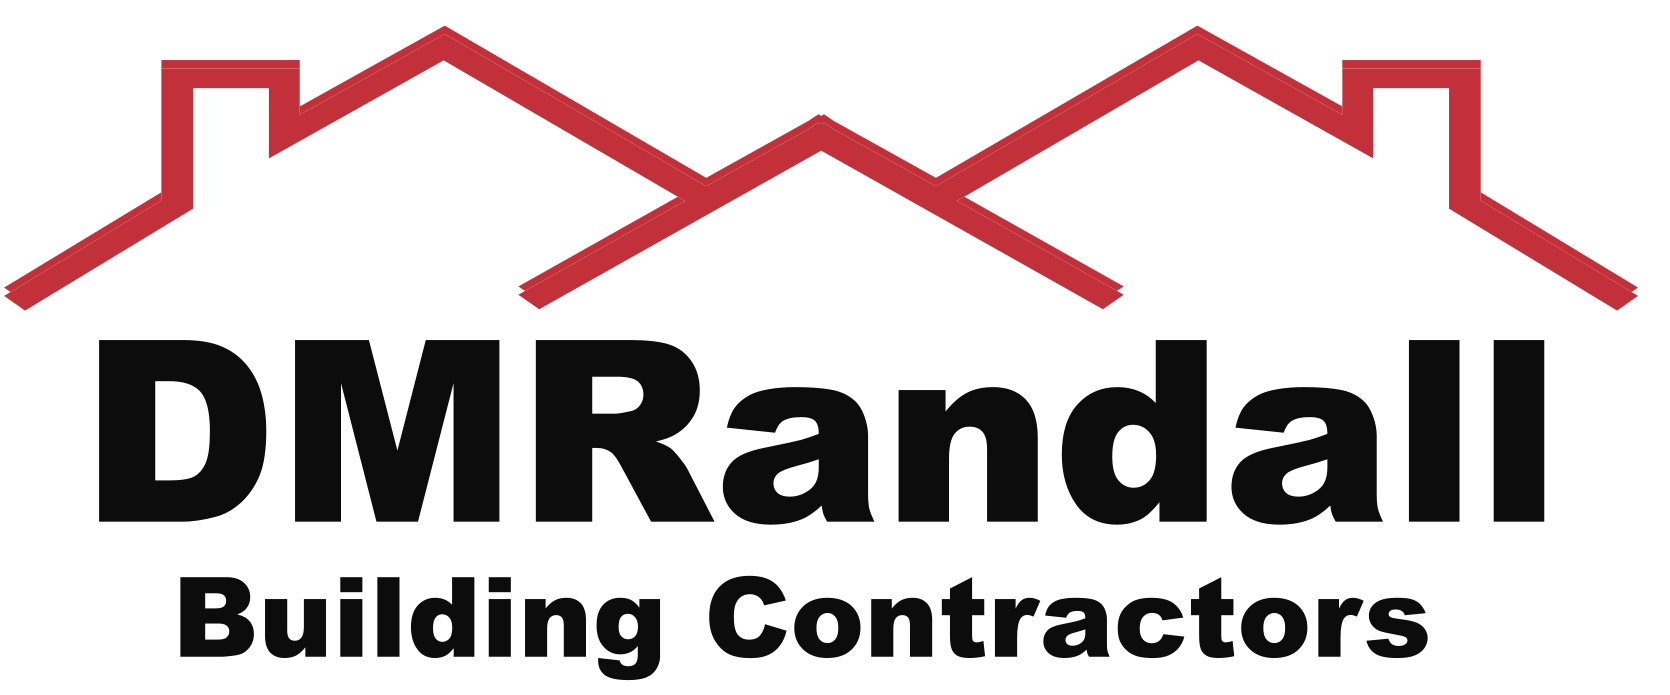 DMRandall Building Contractors